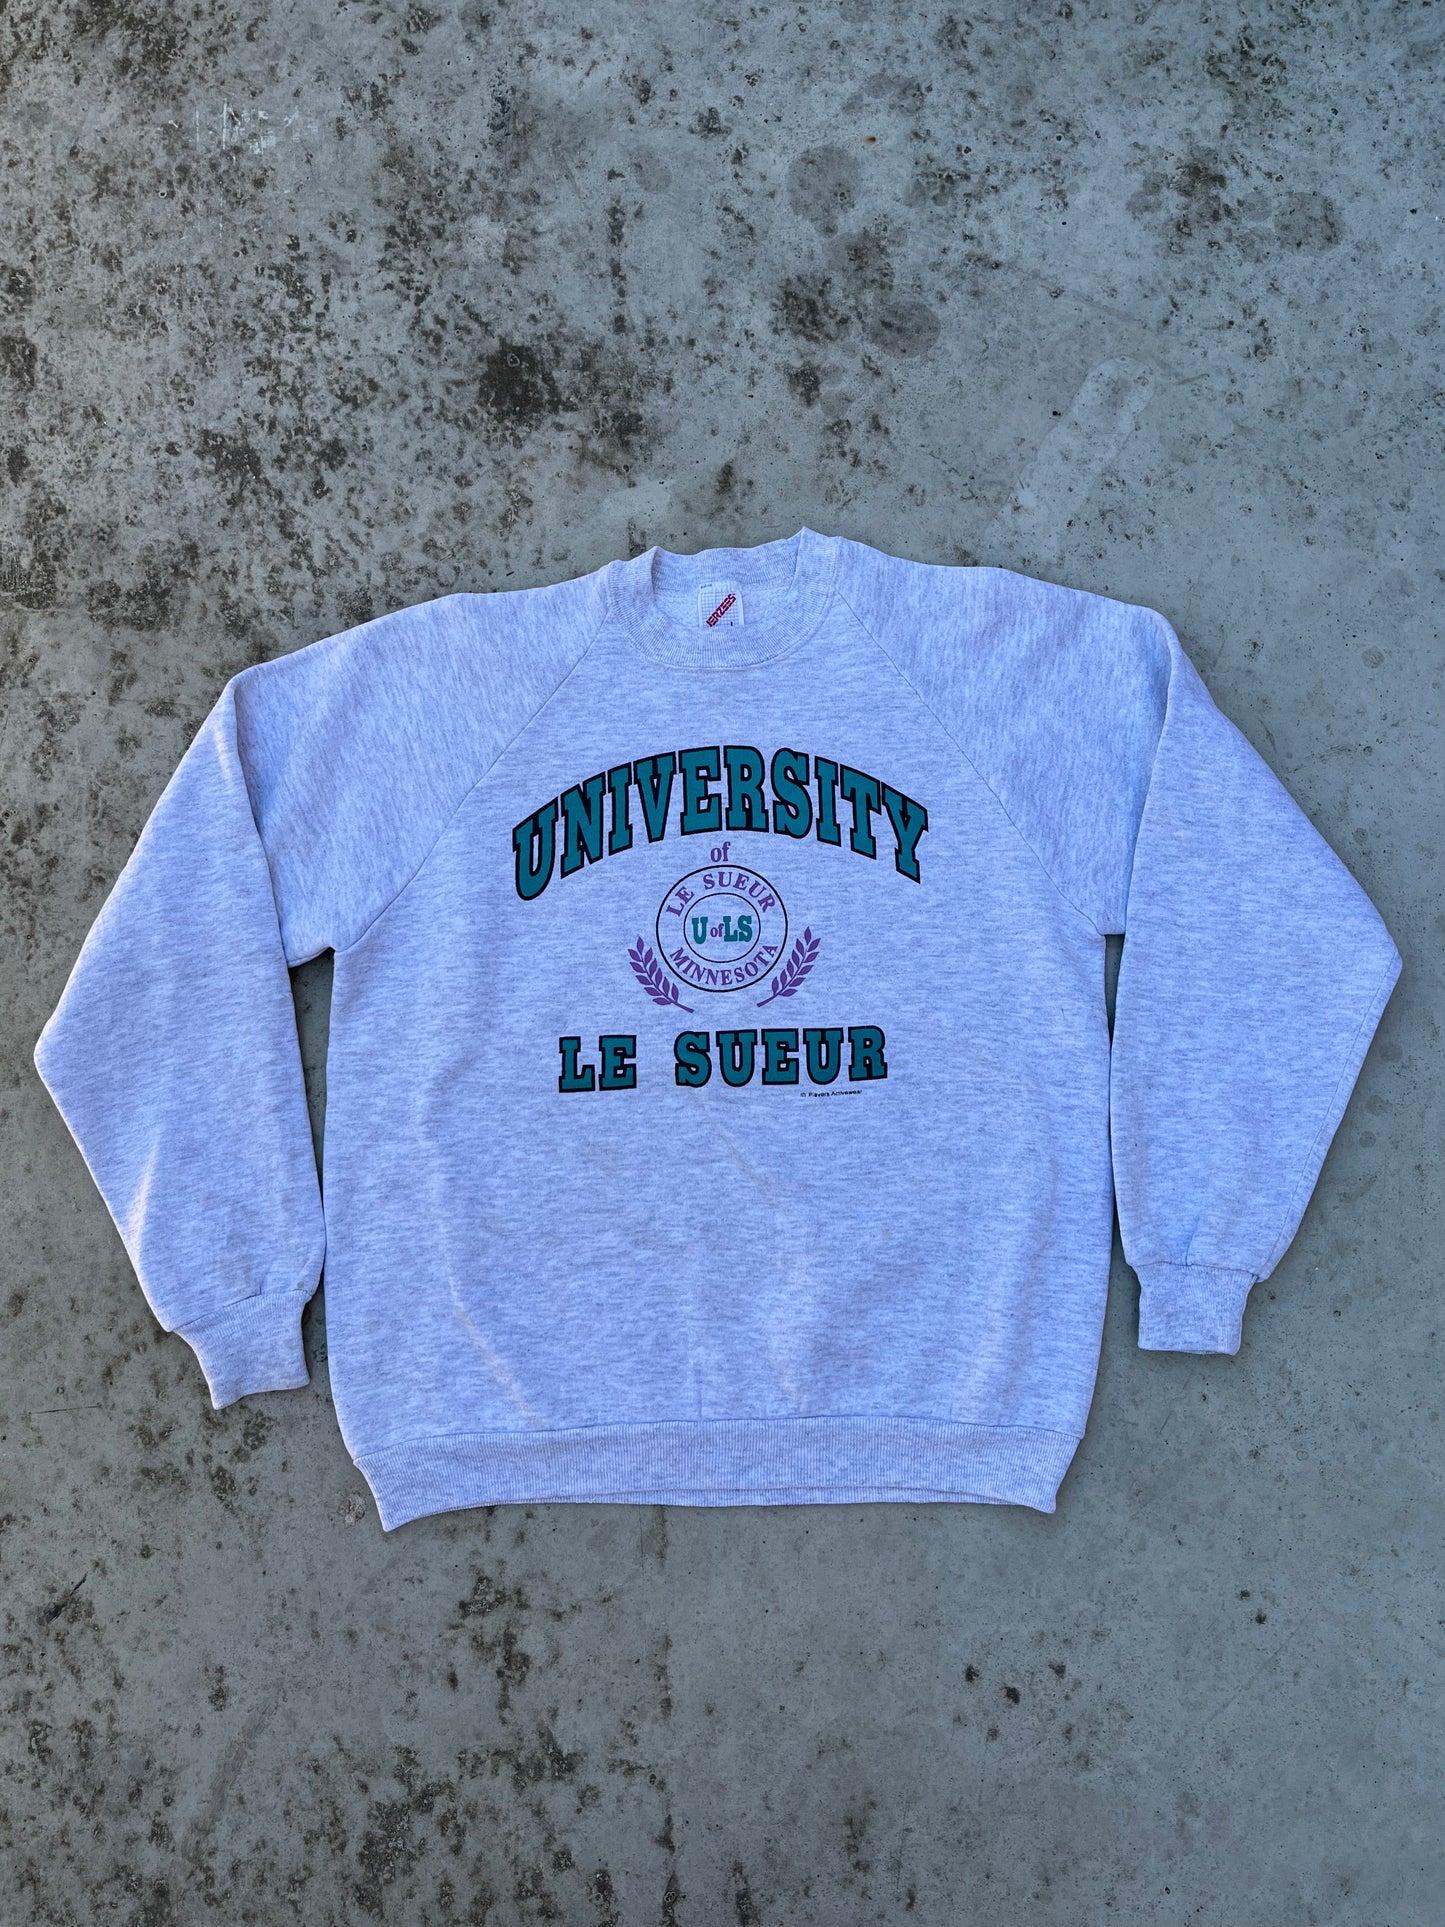 Vintage 80’s Sweatshirt